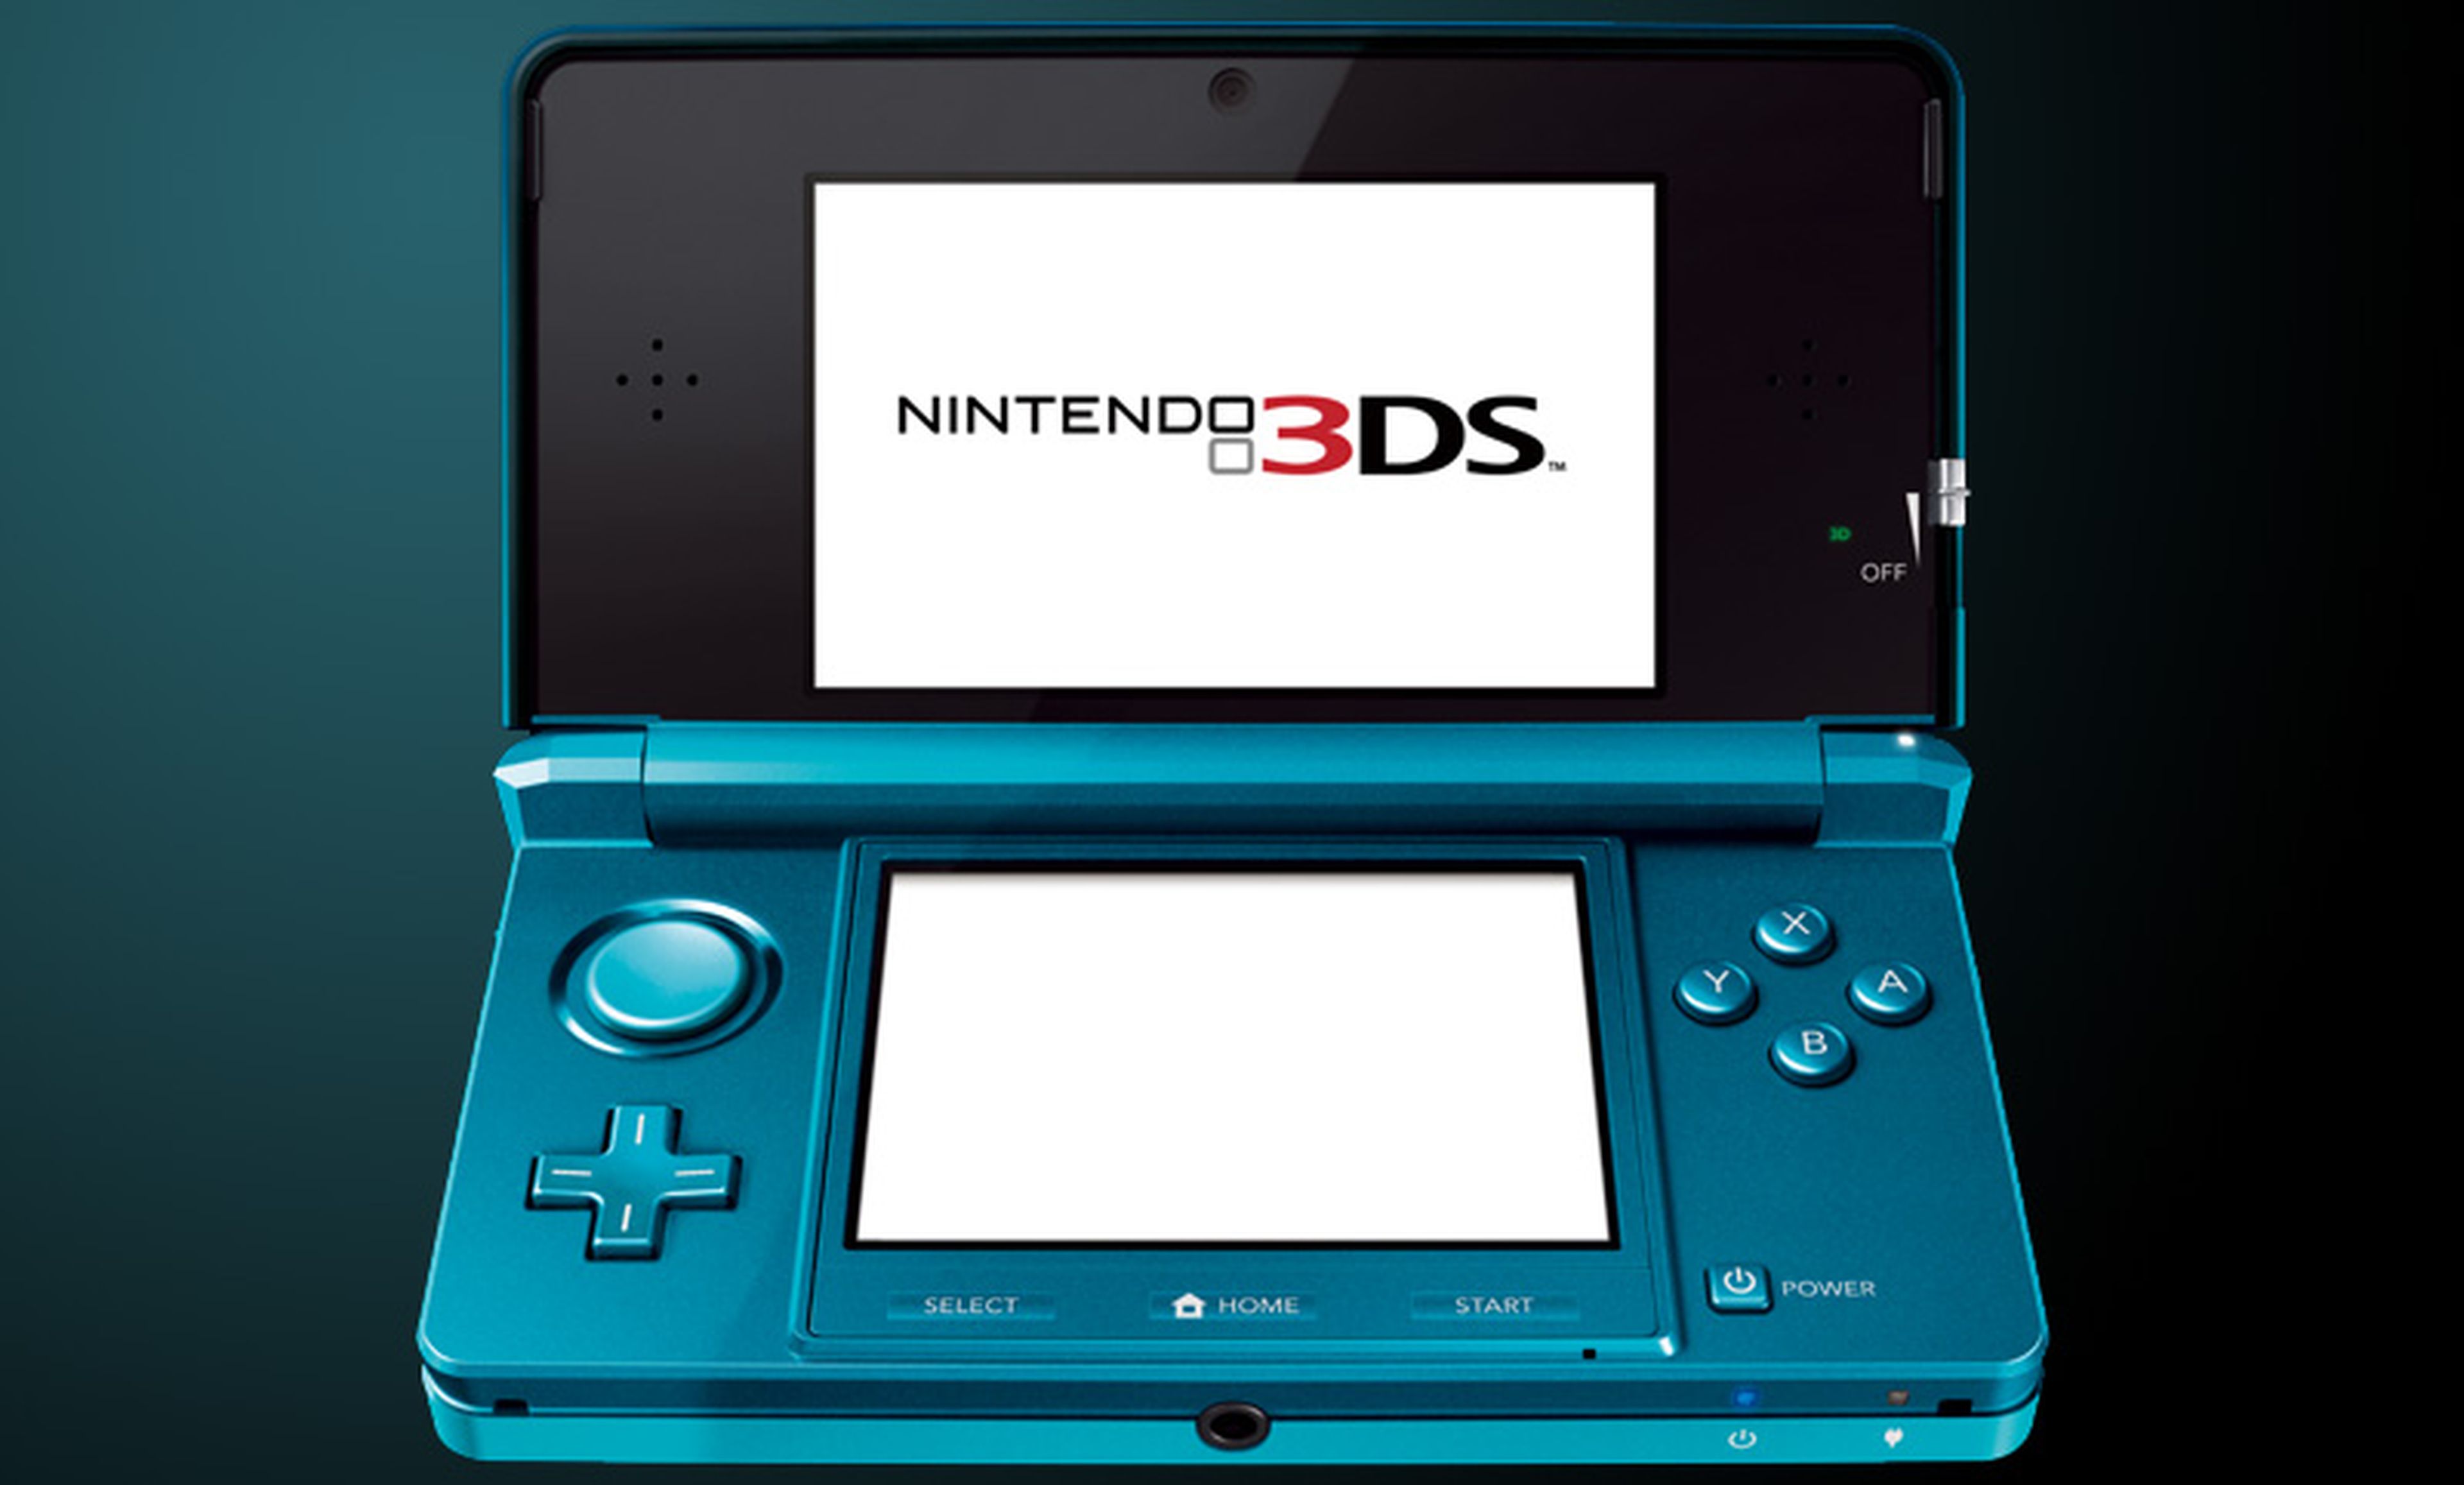 Nintendo 3DS no cambiará su diseño